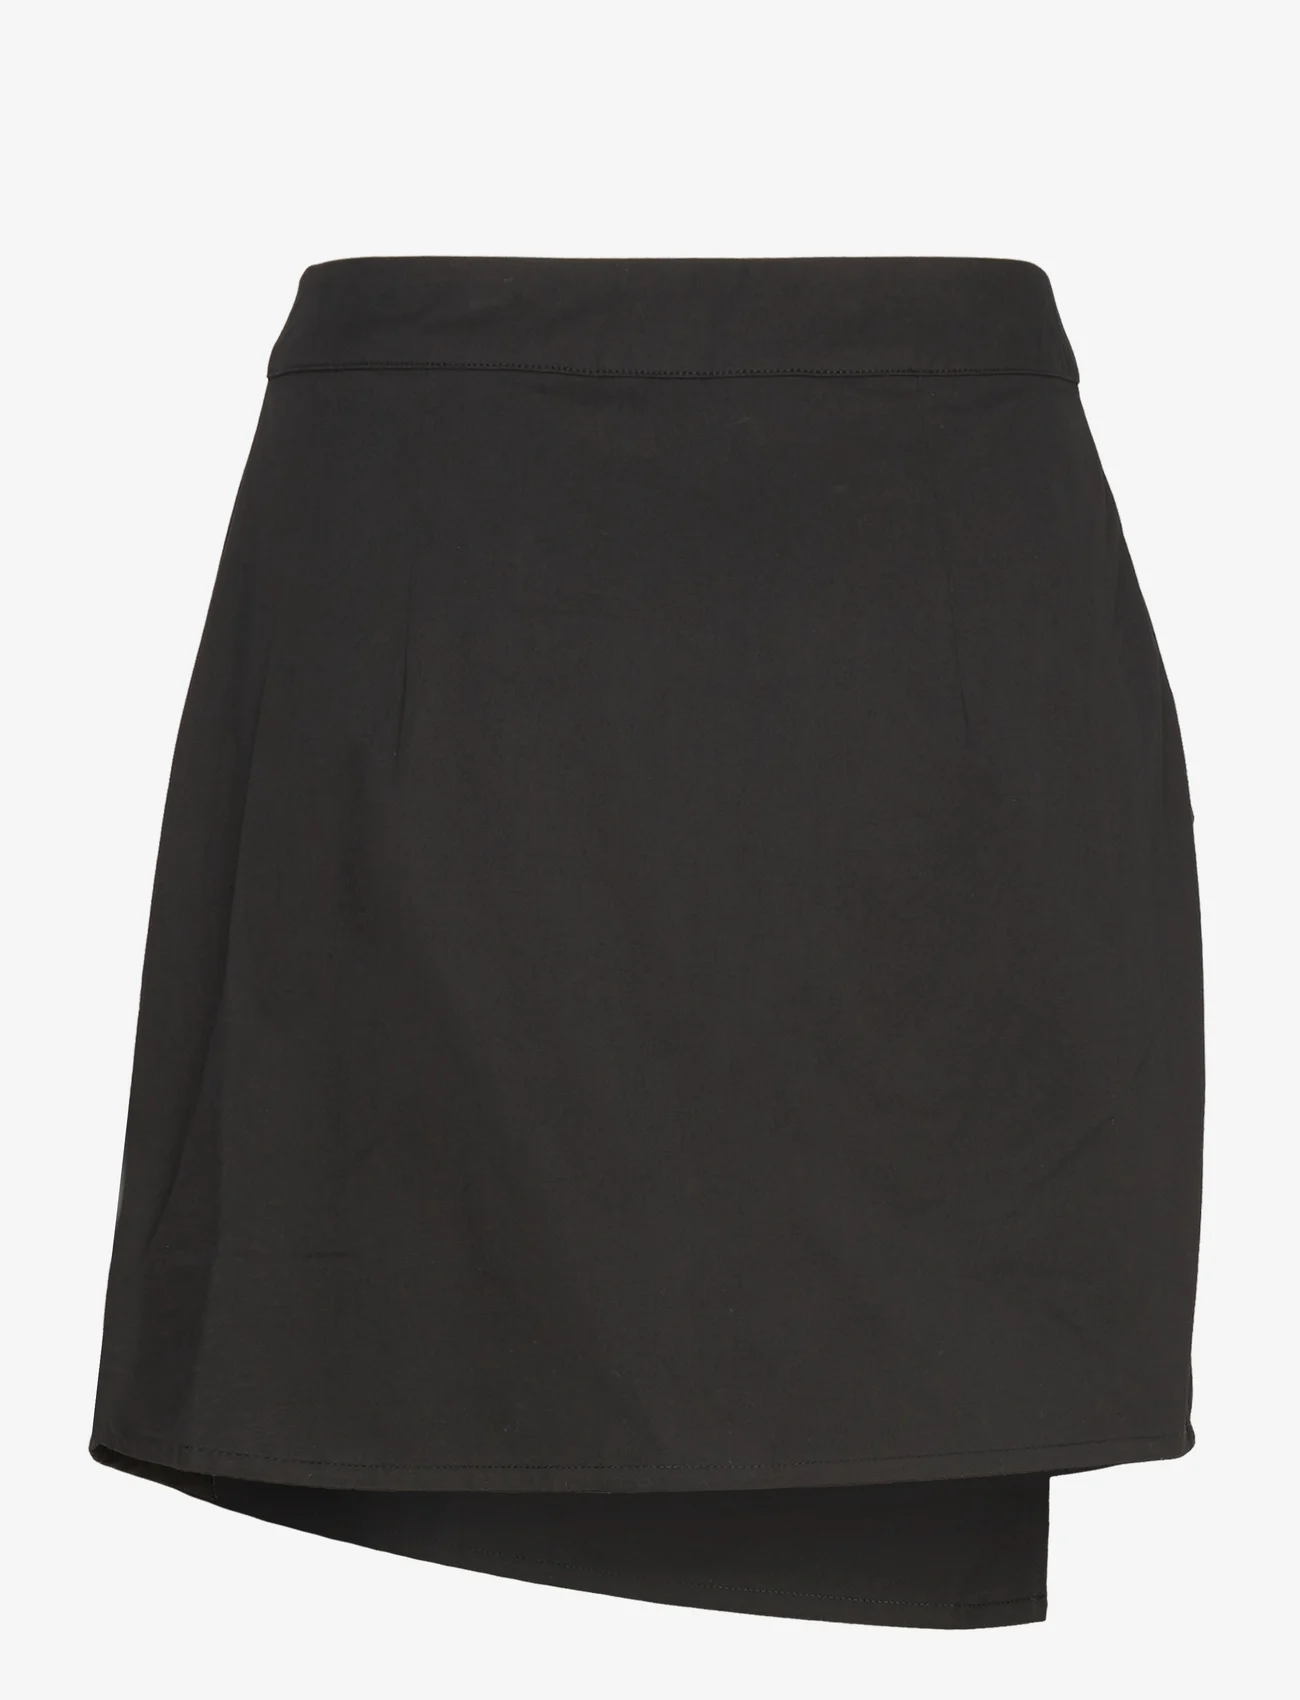 A-View - Calle new skirt - festklær til outlet-priser - black - 1